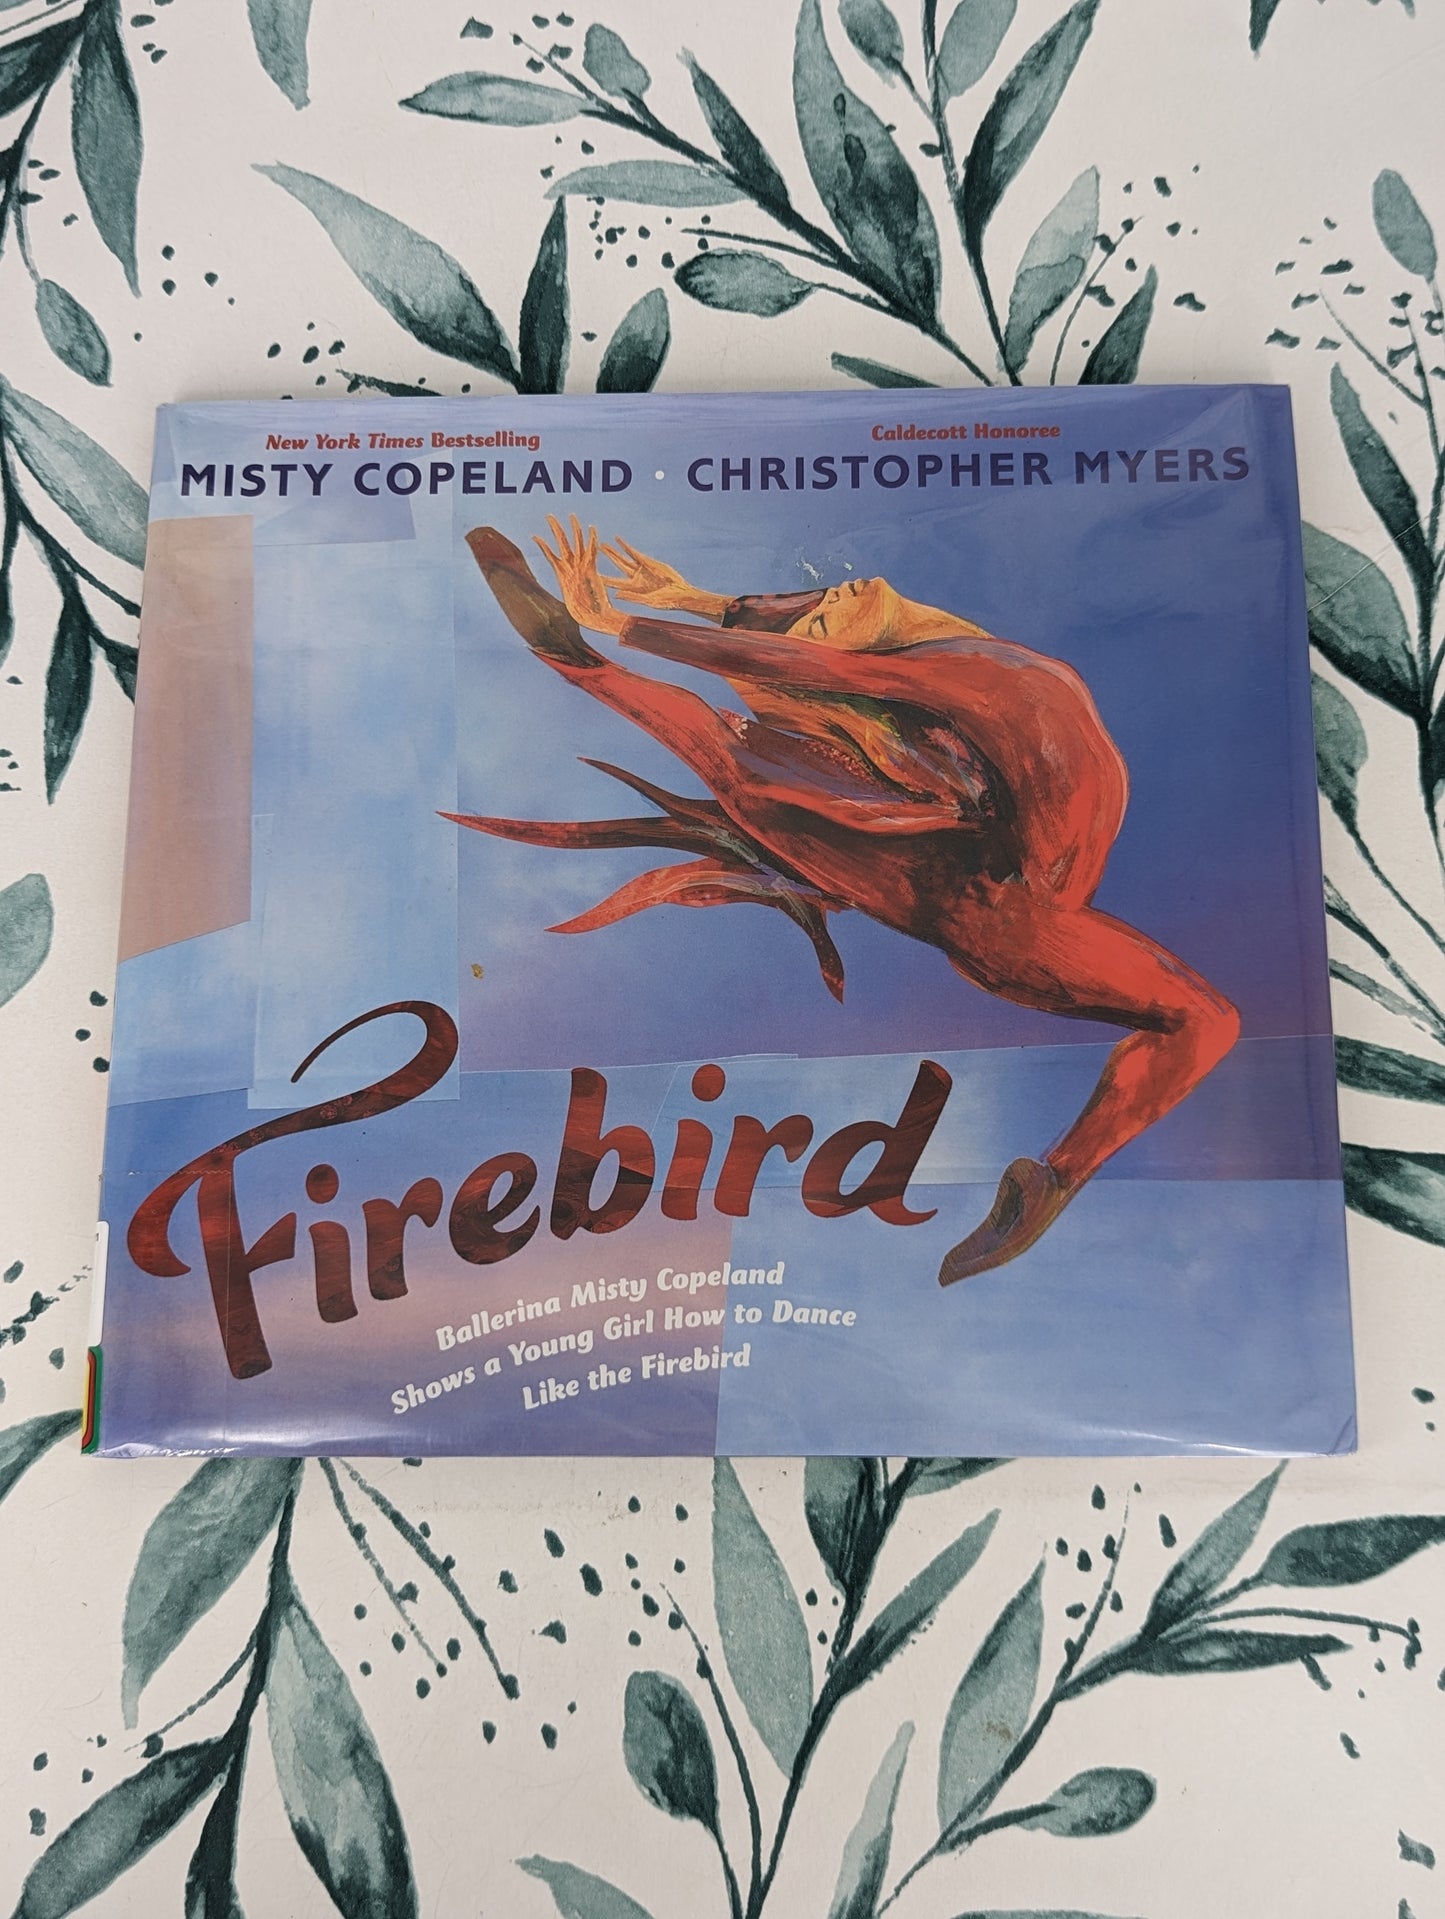 Firebird: Ballerina Misty Copeland Shows a Young Girl How to Dance Like the Firebird